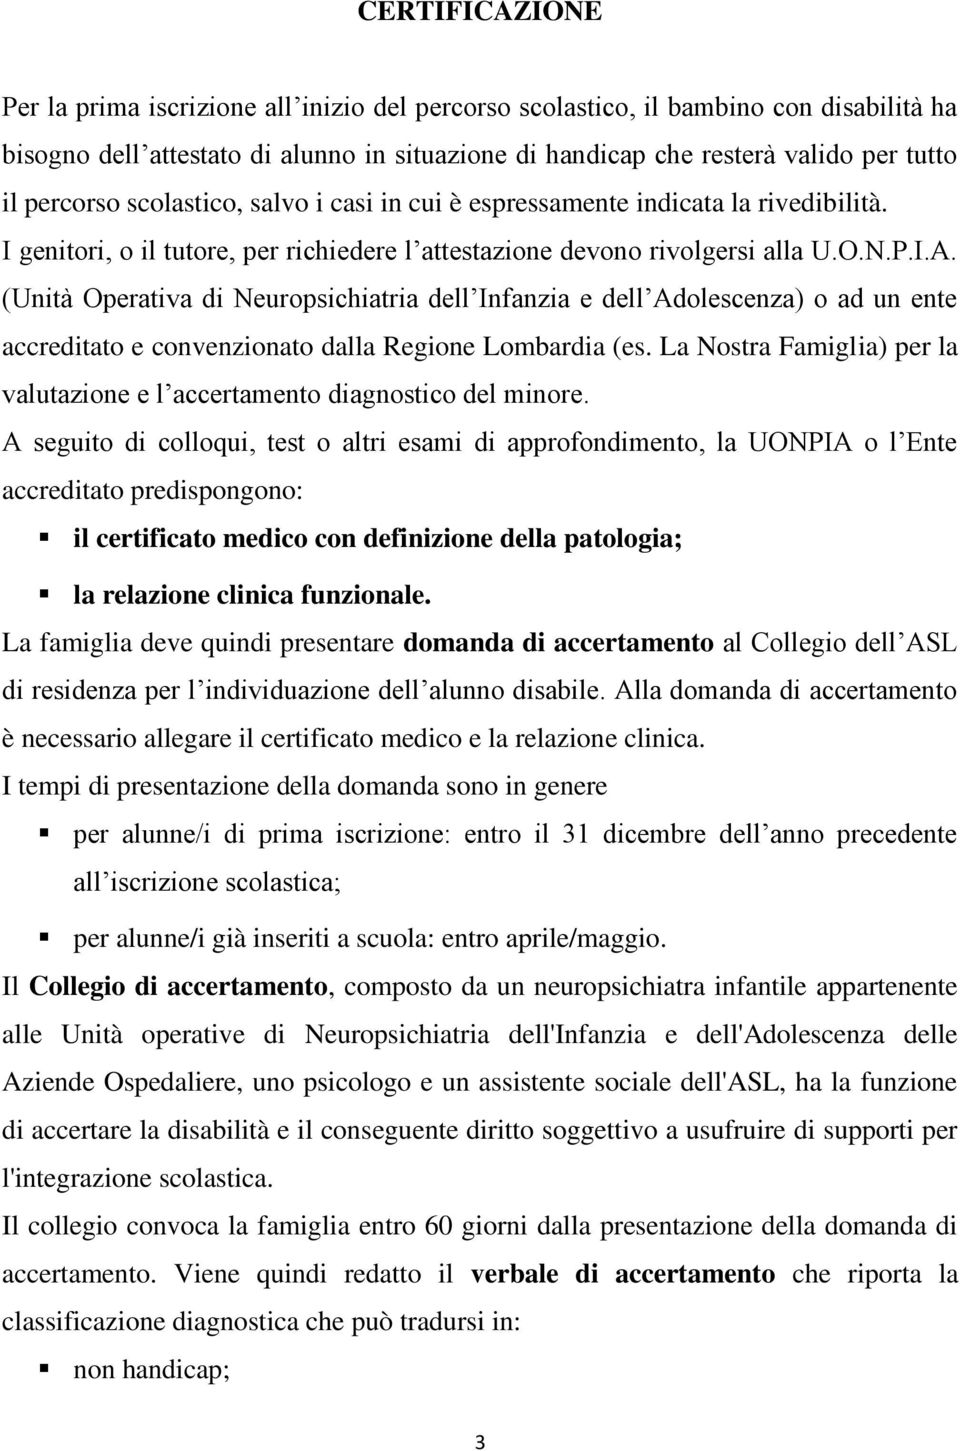 (Unità Operativa di Neuropsichiatria dell Infanzia e dell Adolescenza) o ad un ente accreditato e convenzionato dalla Regione Lombardia (es.